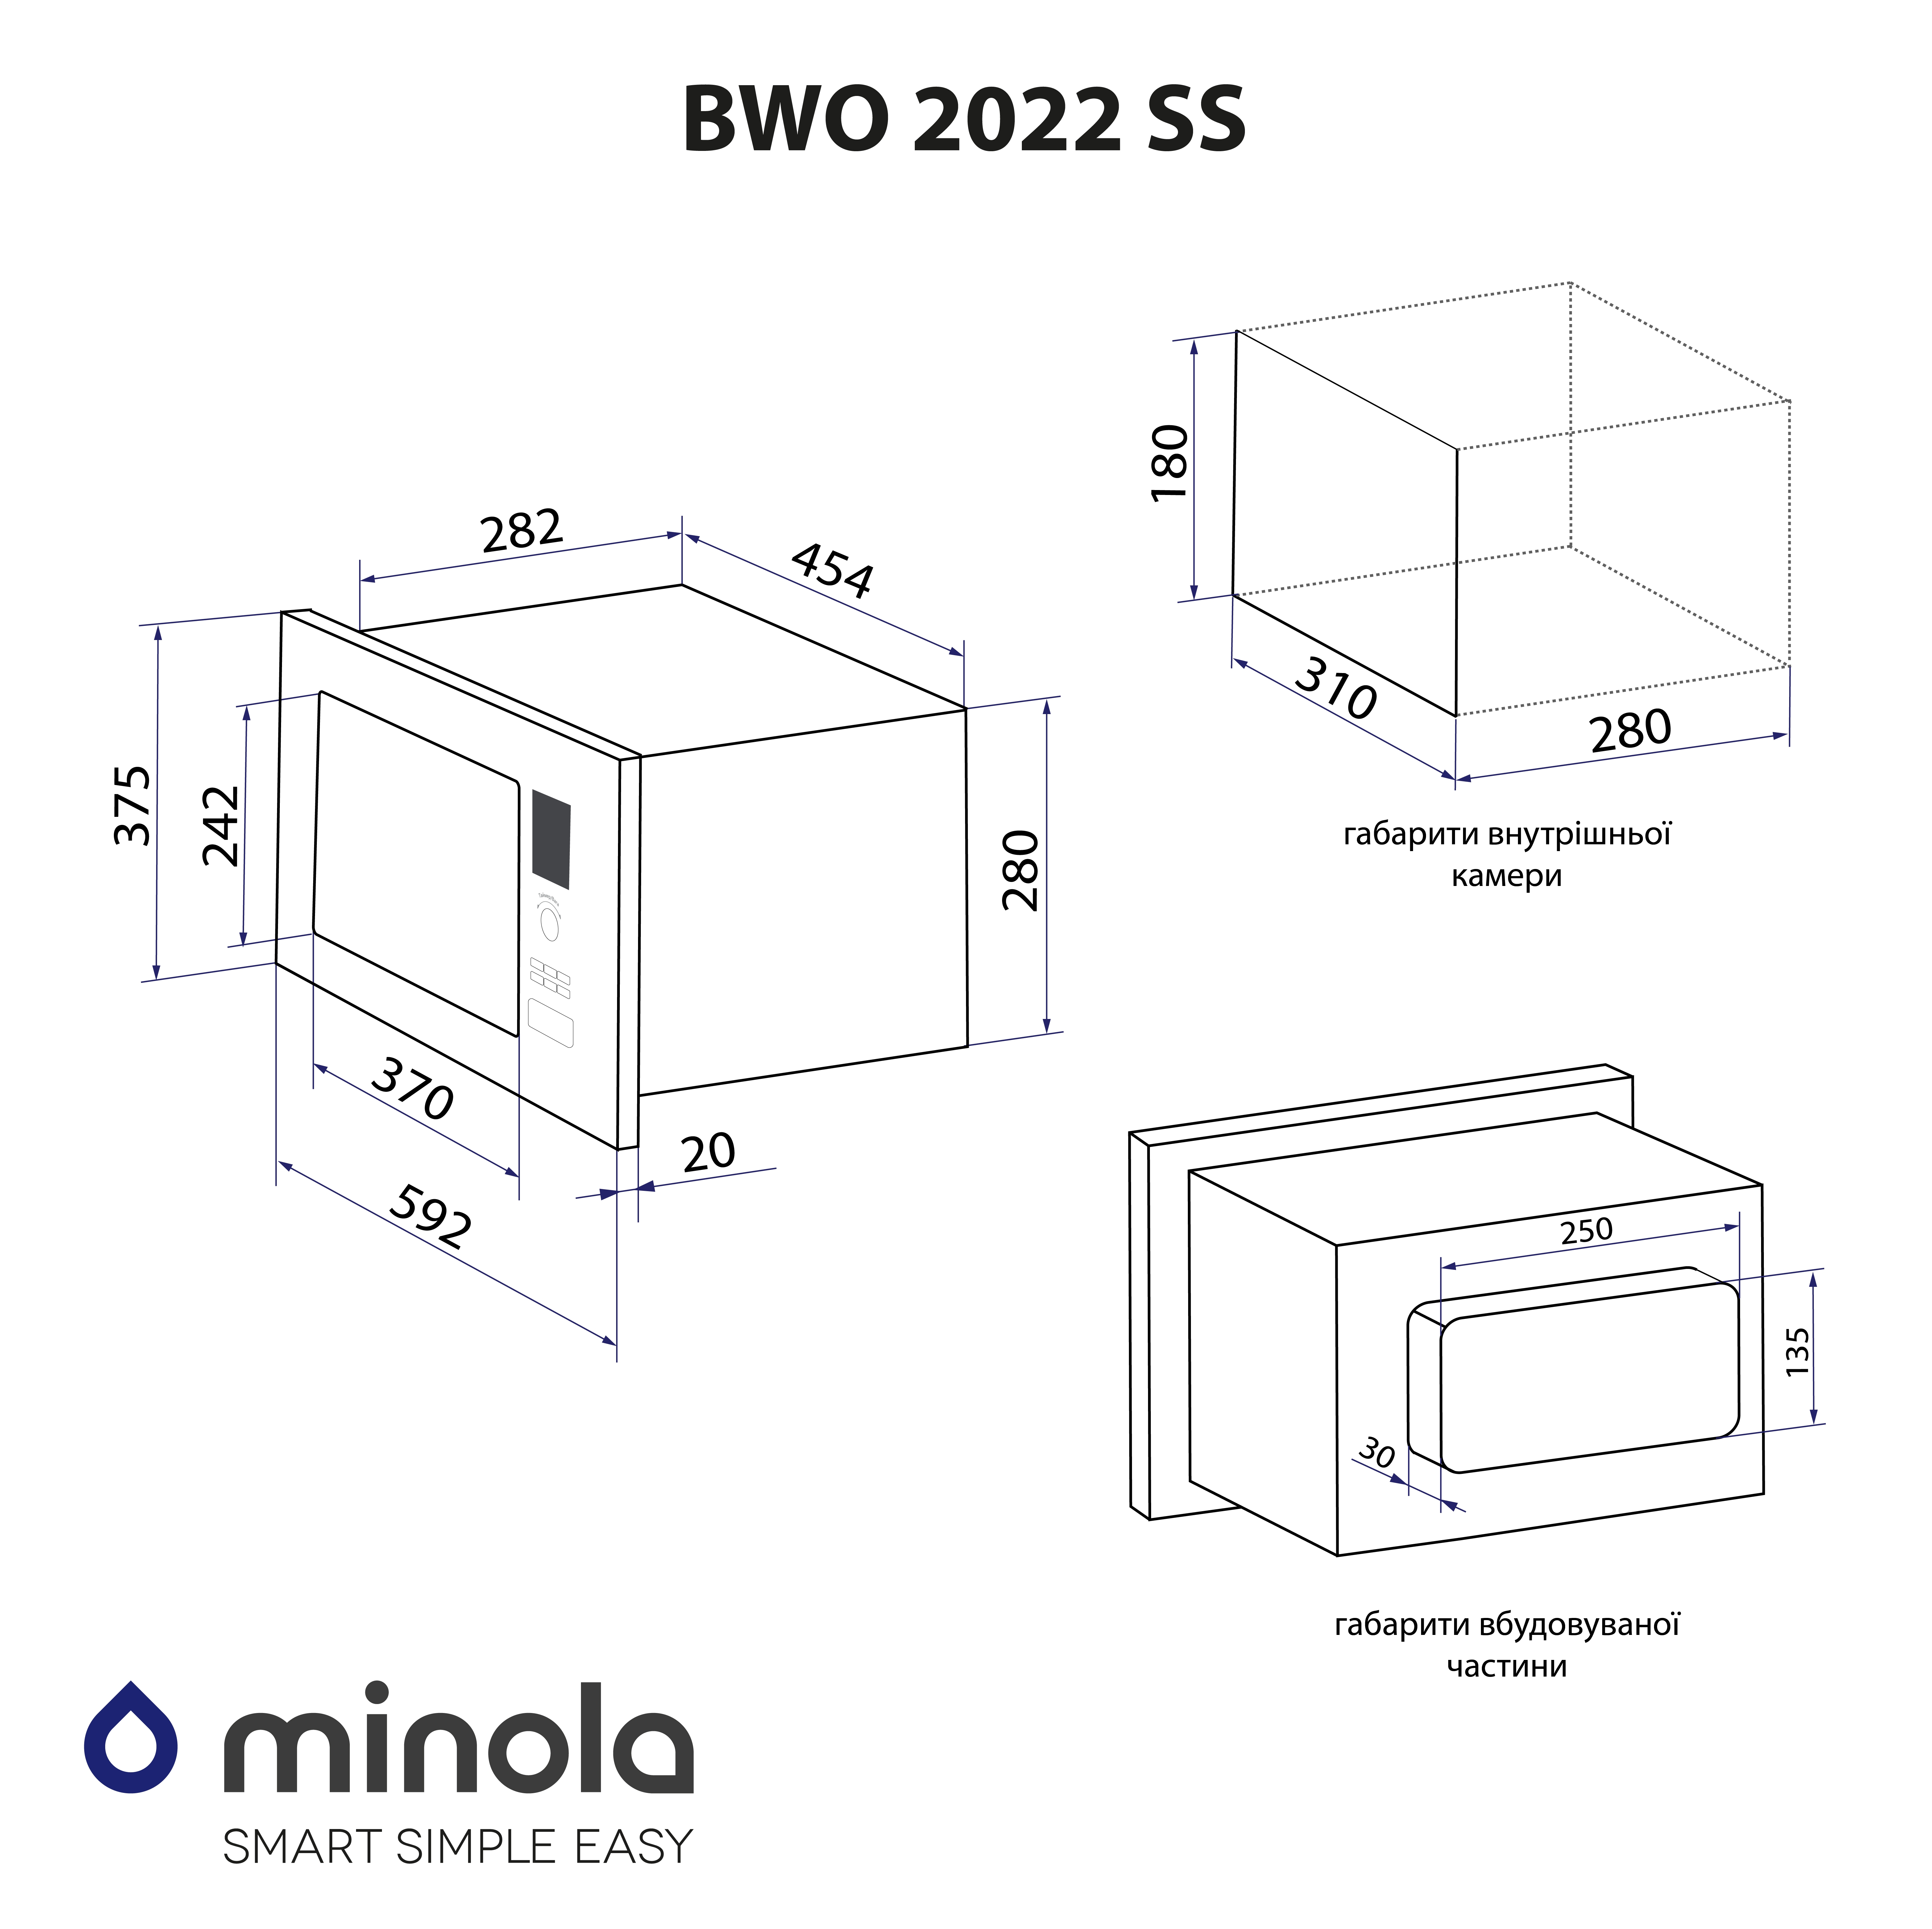 картка товару Minola BWO 2022 SS - фото 16